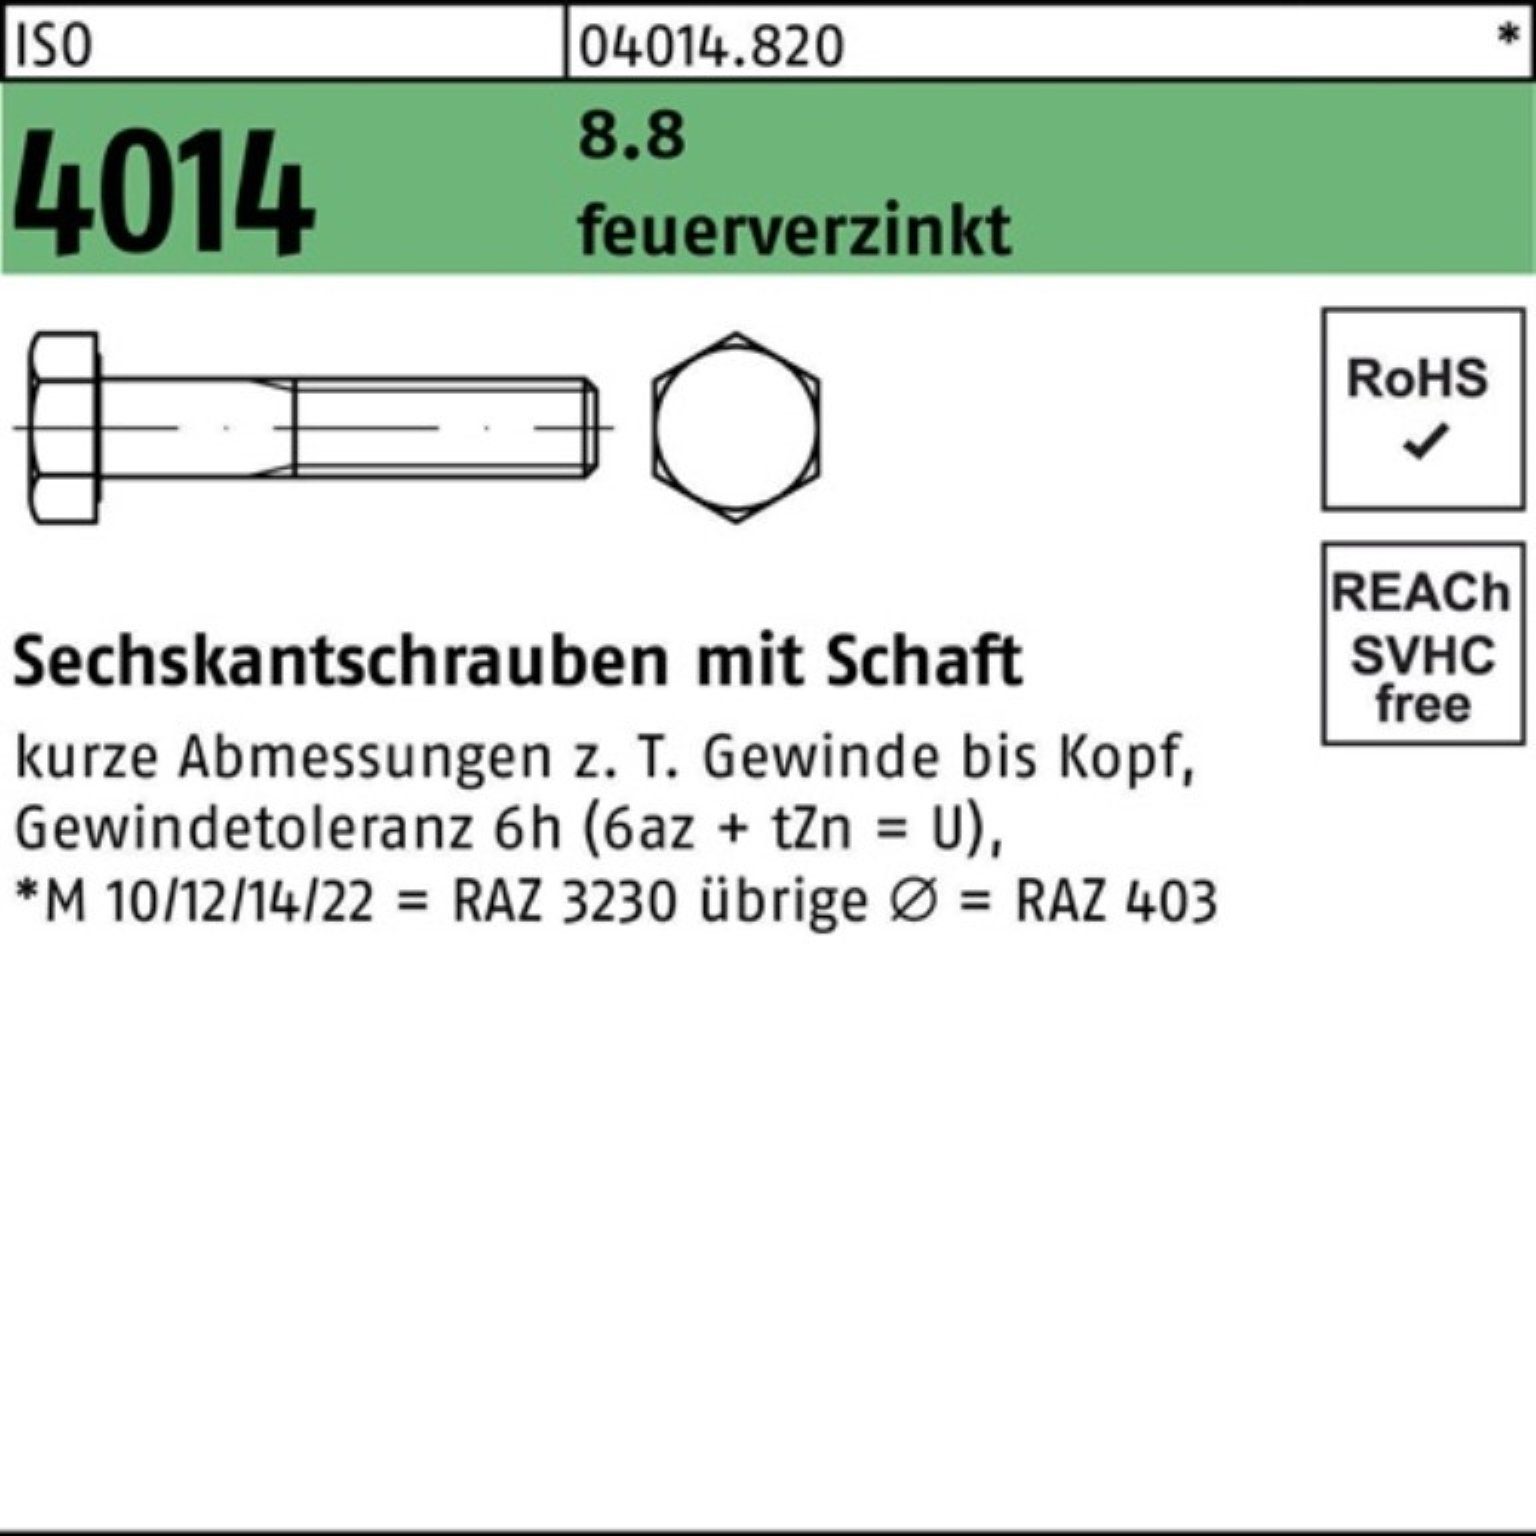 Bufab Sechskantschraube 100er Pack Sechskantschraube ISO 4014 Schaft M20x 85 8.8 feuerverz. 25